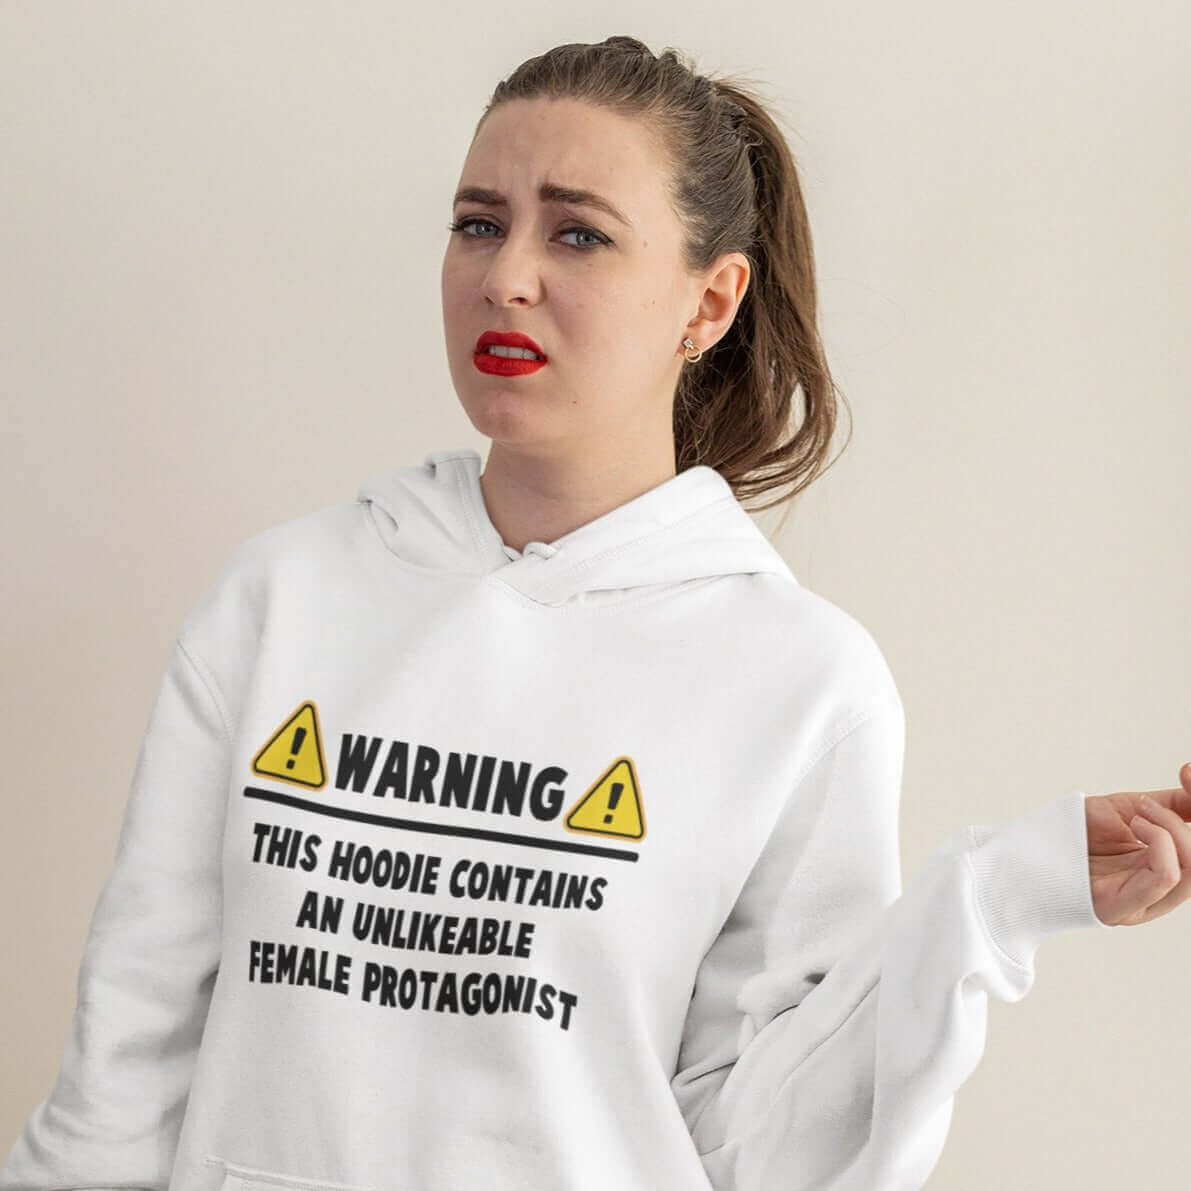 Unlikable female protagonist warning hoodie sweatshirt